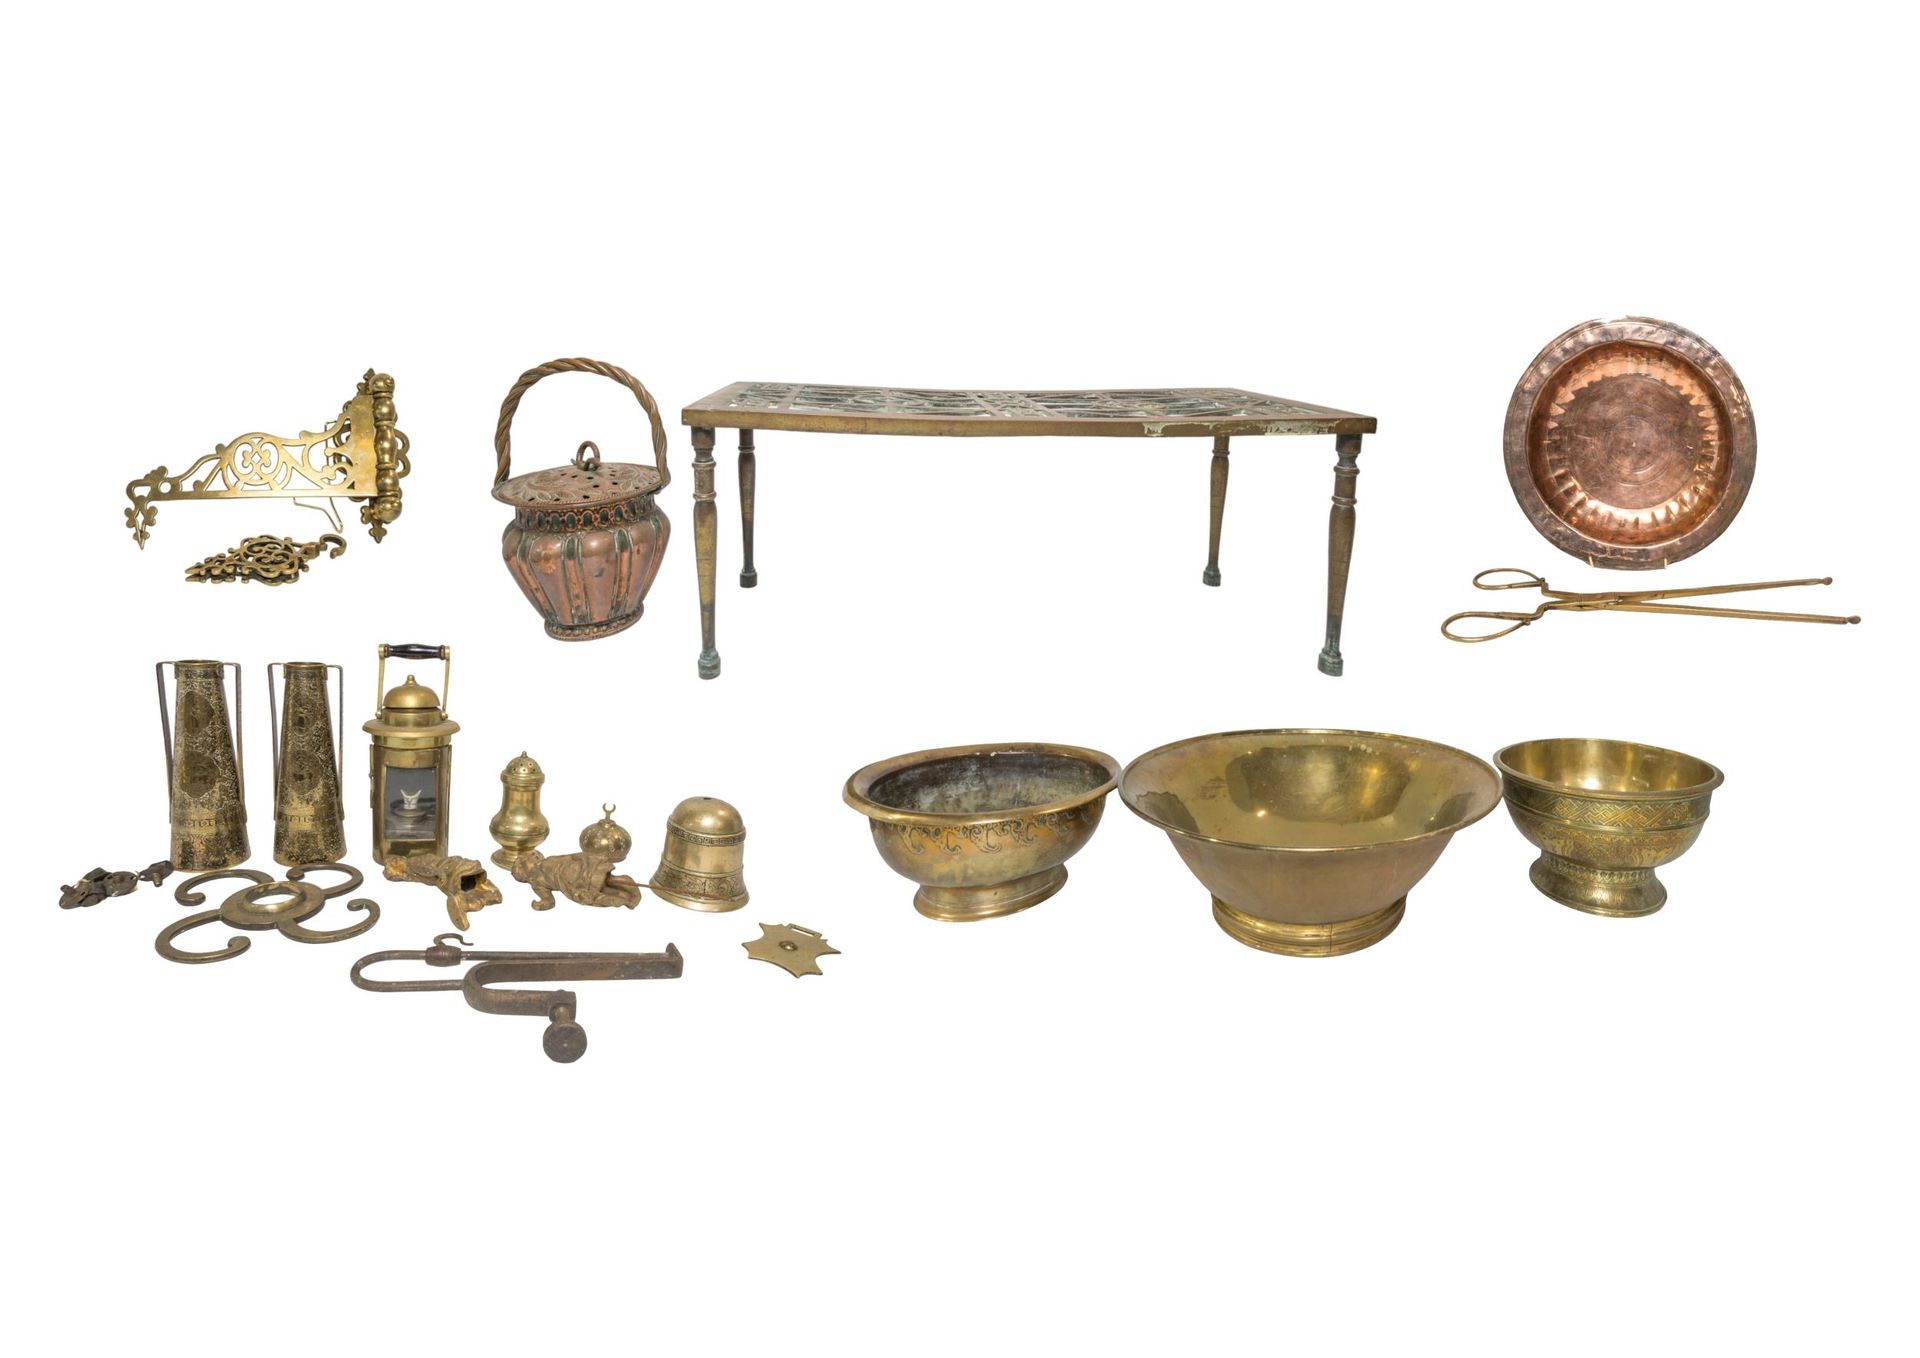 Null 一个带镂空顶的长形黄铜花瓶、一个维多利亚时期的花式黄铜托架、一对黄铜钳子、一个铜暖壶、一个黄铜灯笼以及其他各式铜器和黄铜器皿。最大 30 厘米